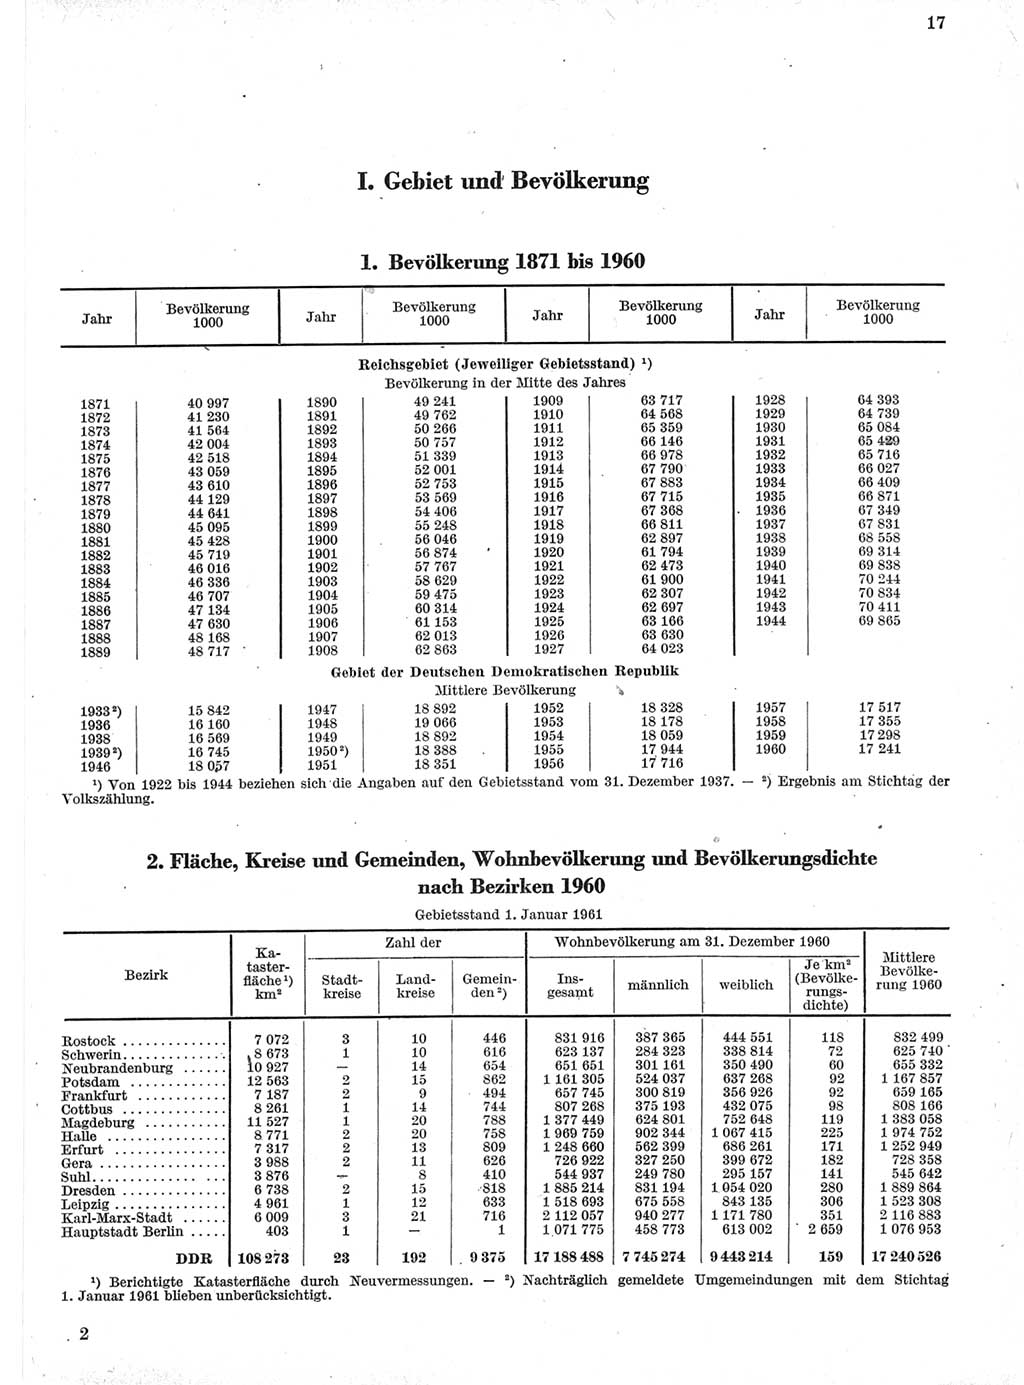 Statistisches Jahrbuch der Deutschen Demokratischen Republik (DDR) 1960-1961, Seite 17 (Stat. Jb. DDR 1960-1961, S. 17)